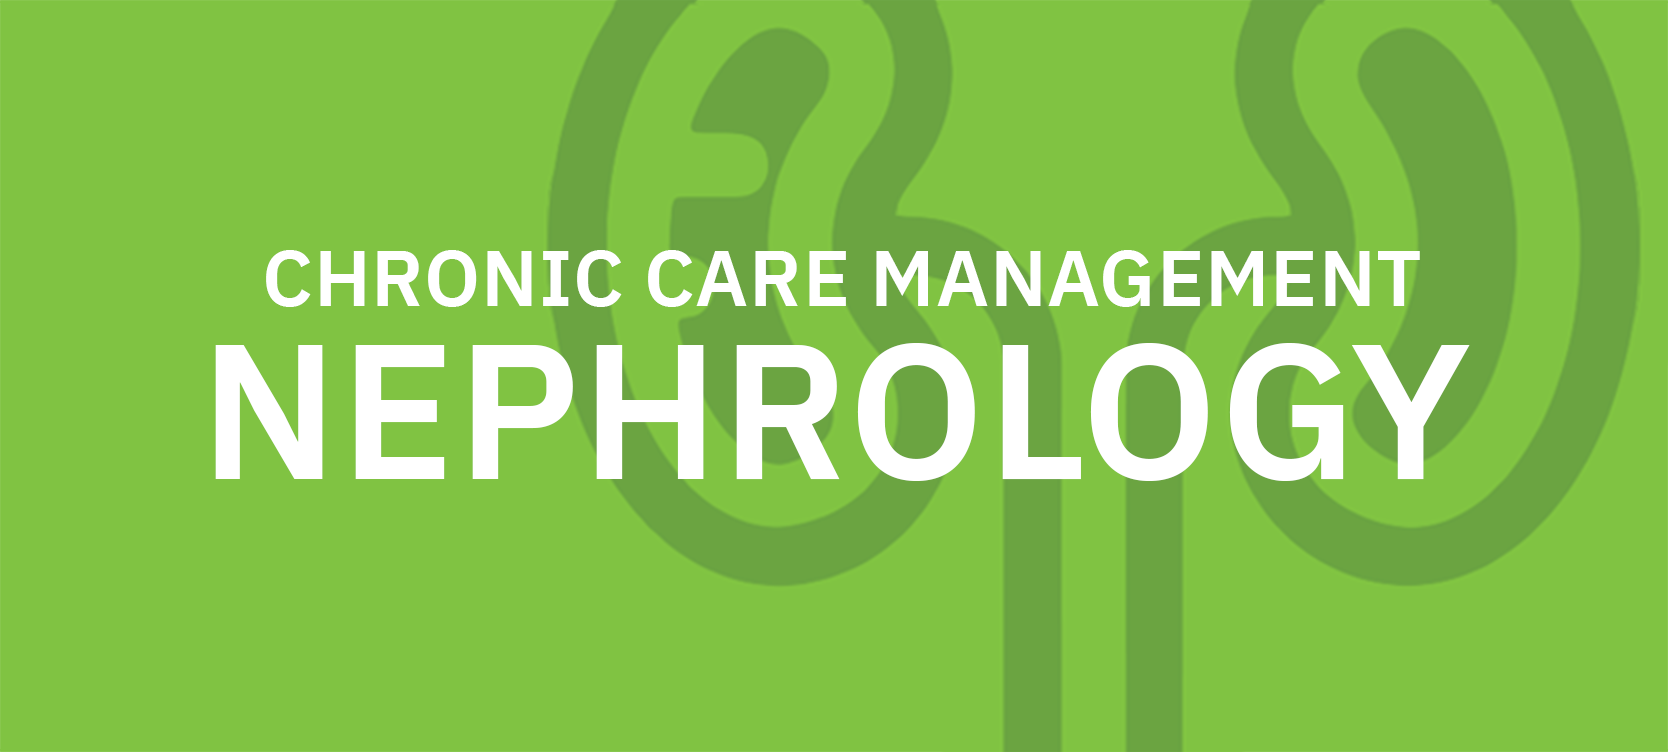 Chronic Care Management For Nephrology